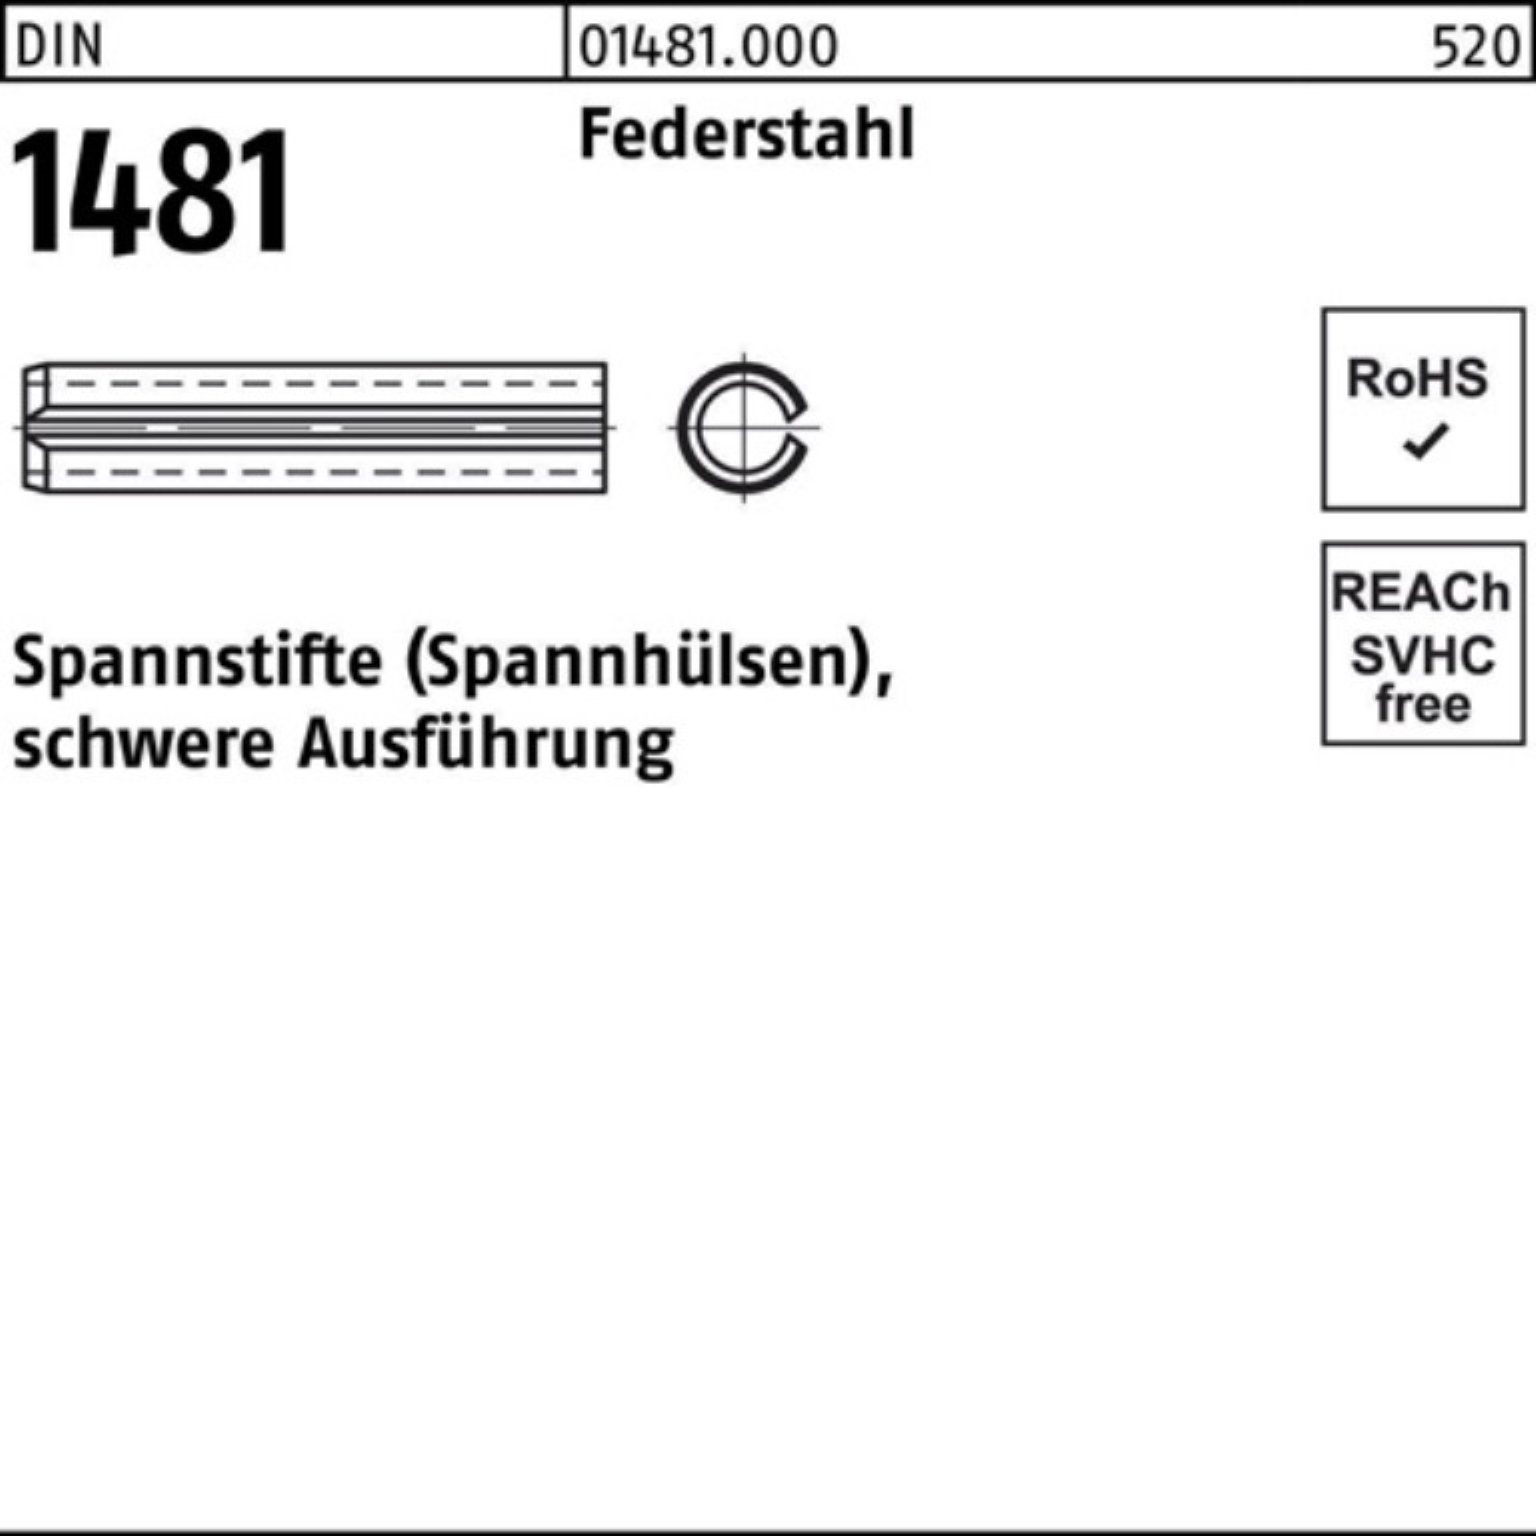 Reyher Spannstift 100er Pack Spannstift DIN 1481 14x 140 Federstahl schwere Ausführung